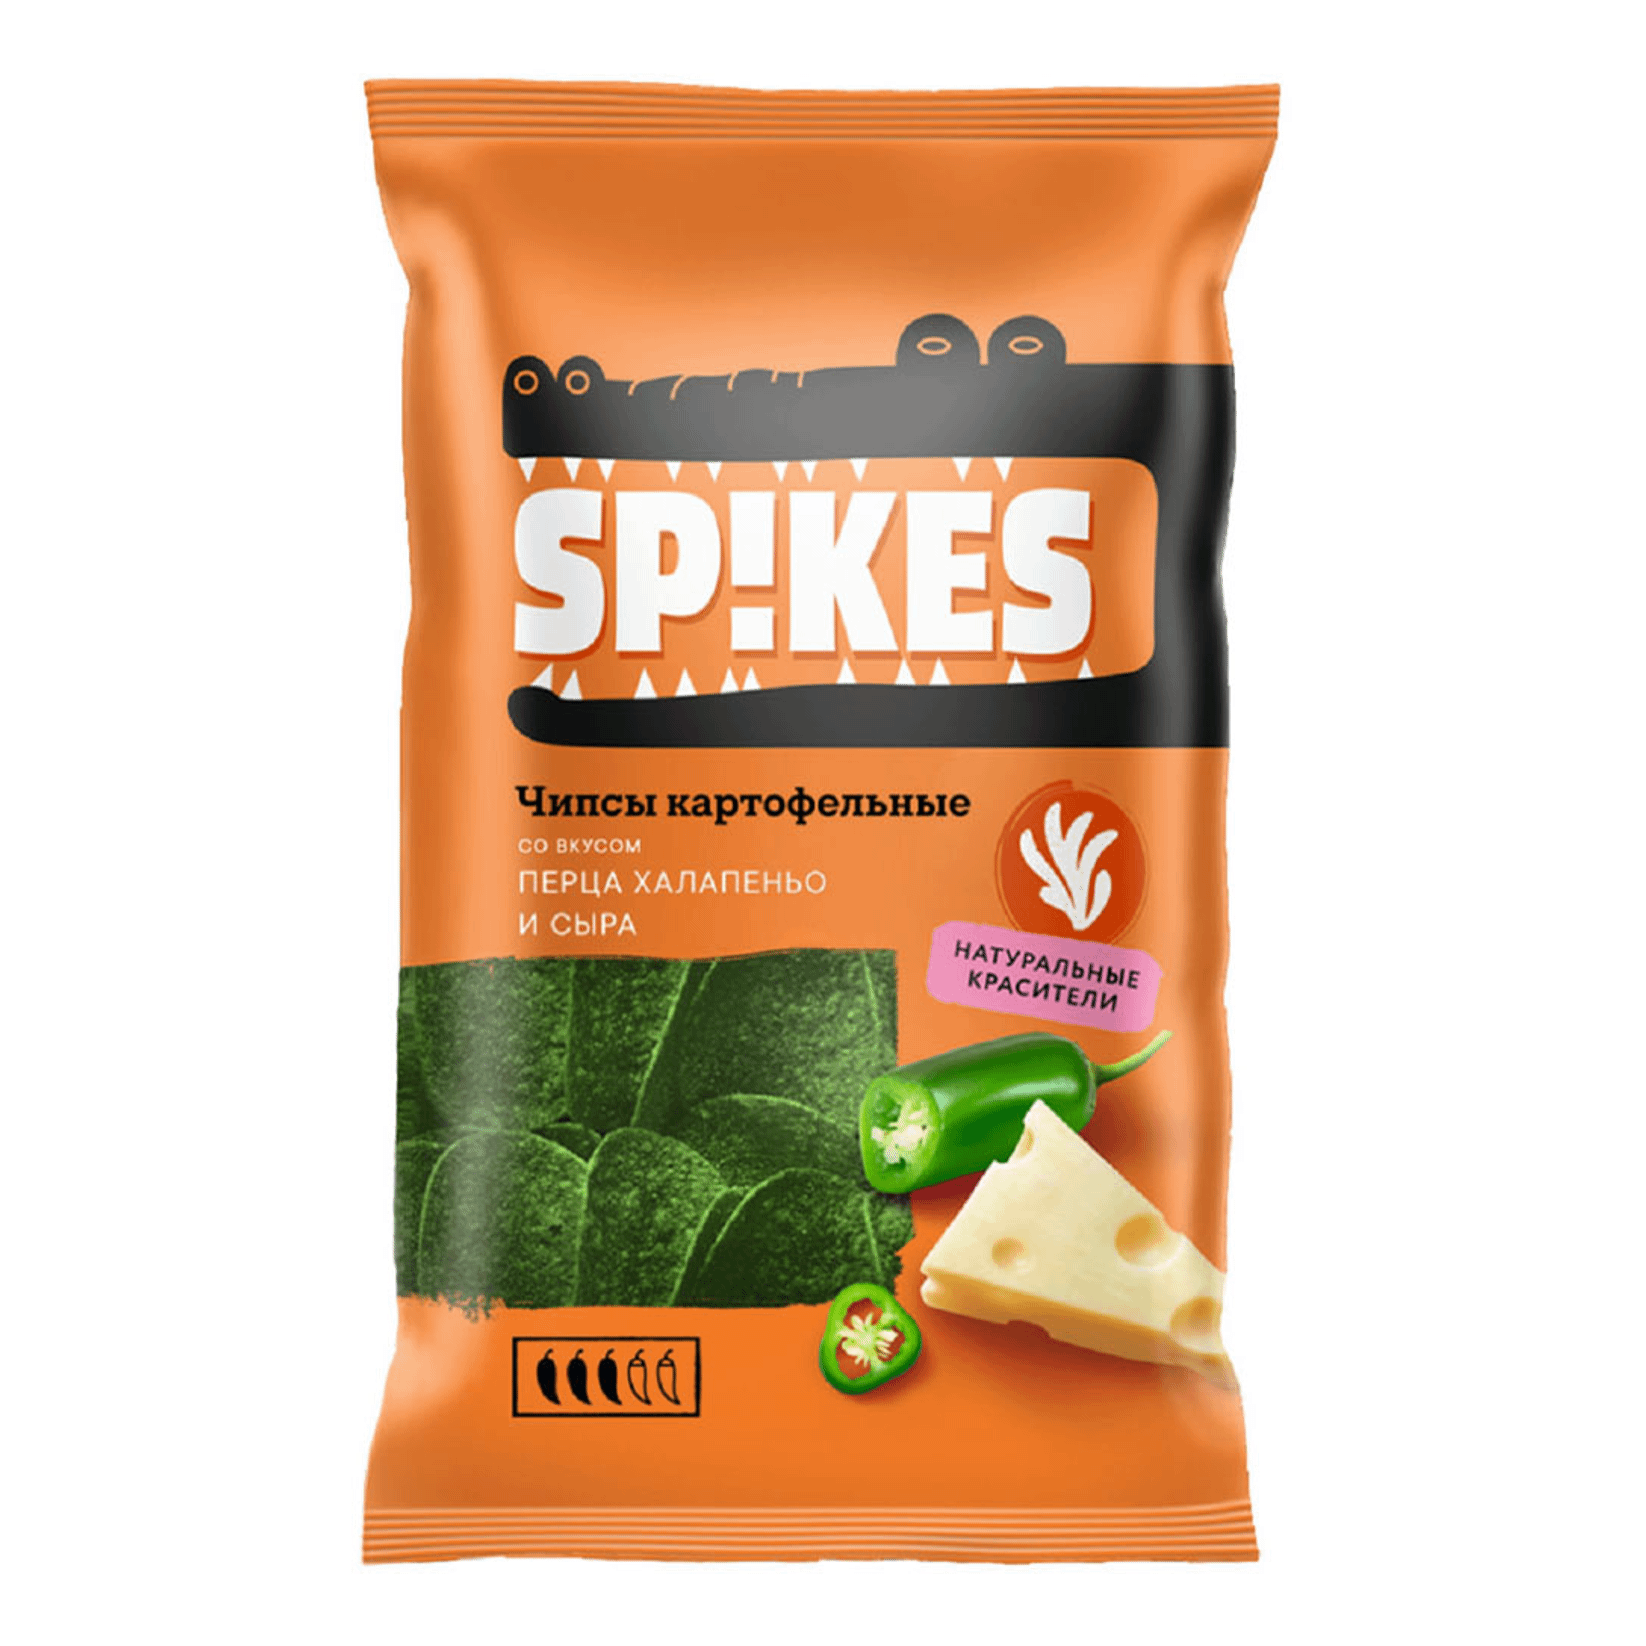 Чипсы картофельные Spikes со вкусом перца халапеньо и сыра 80 г